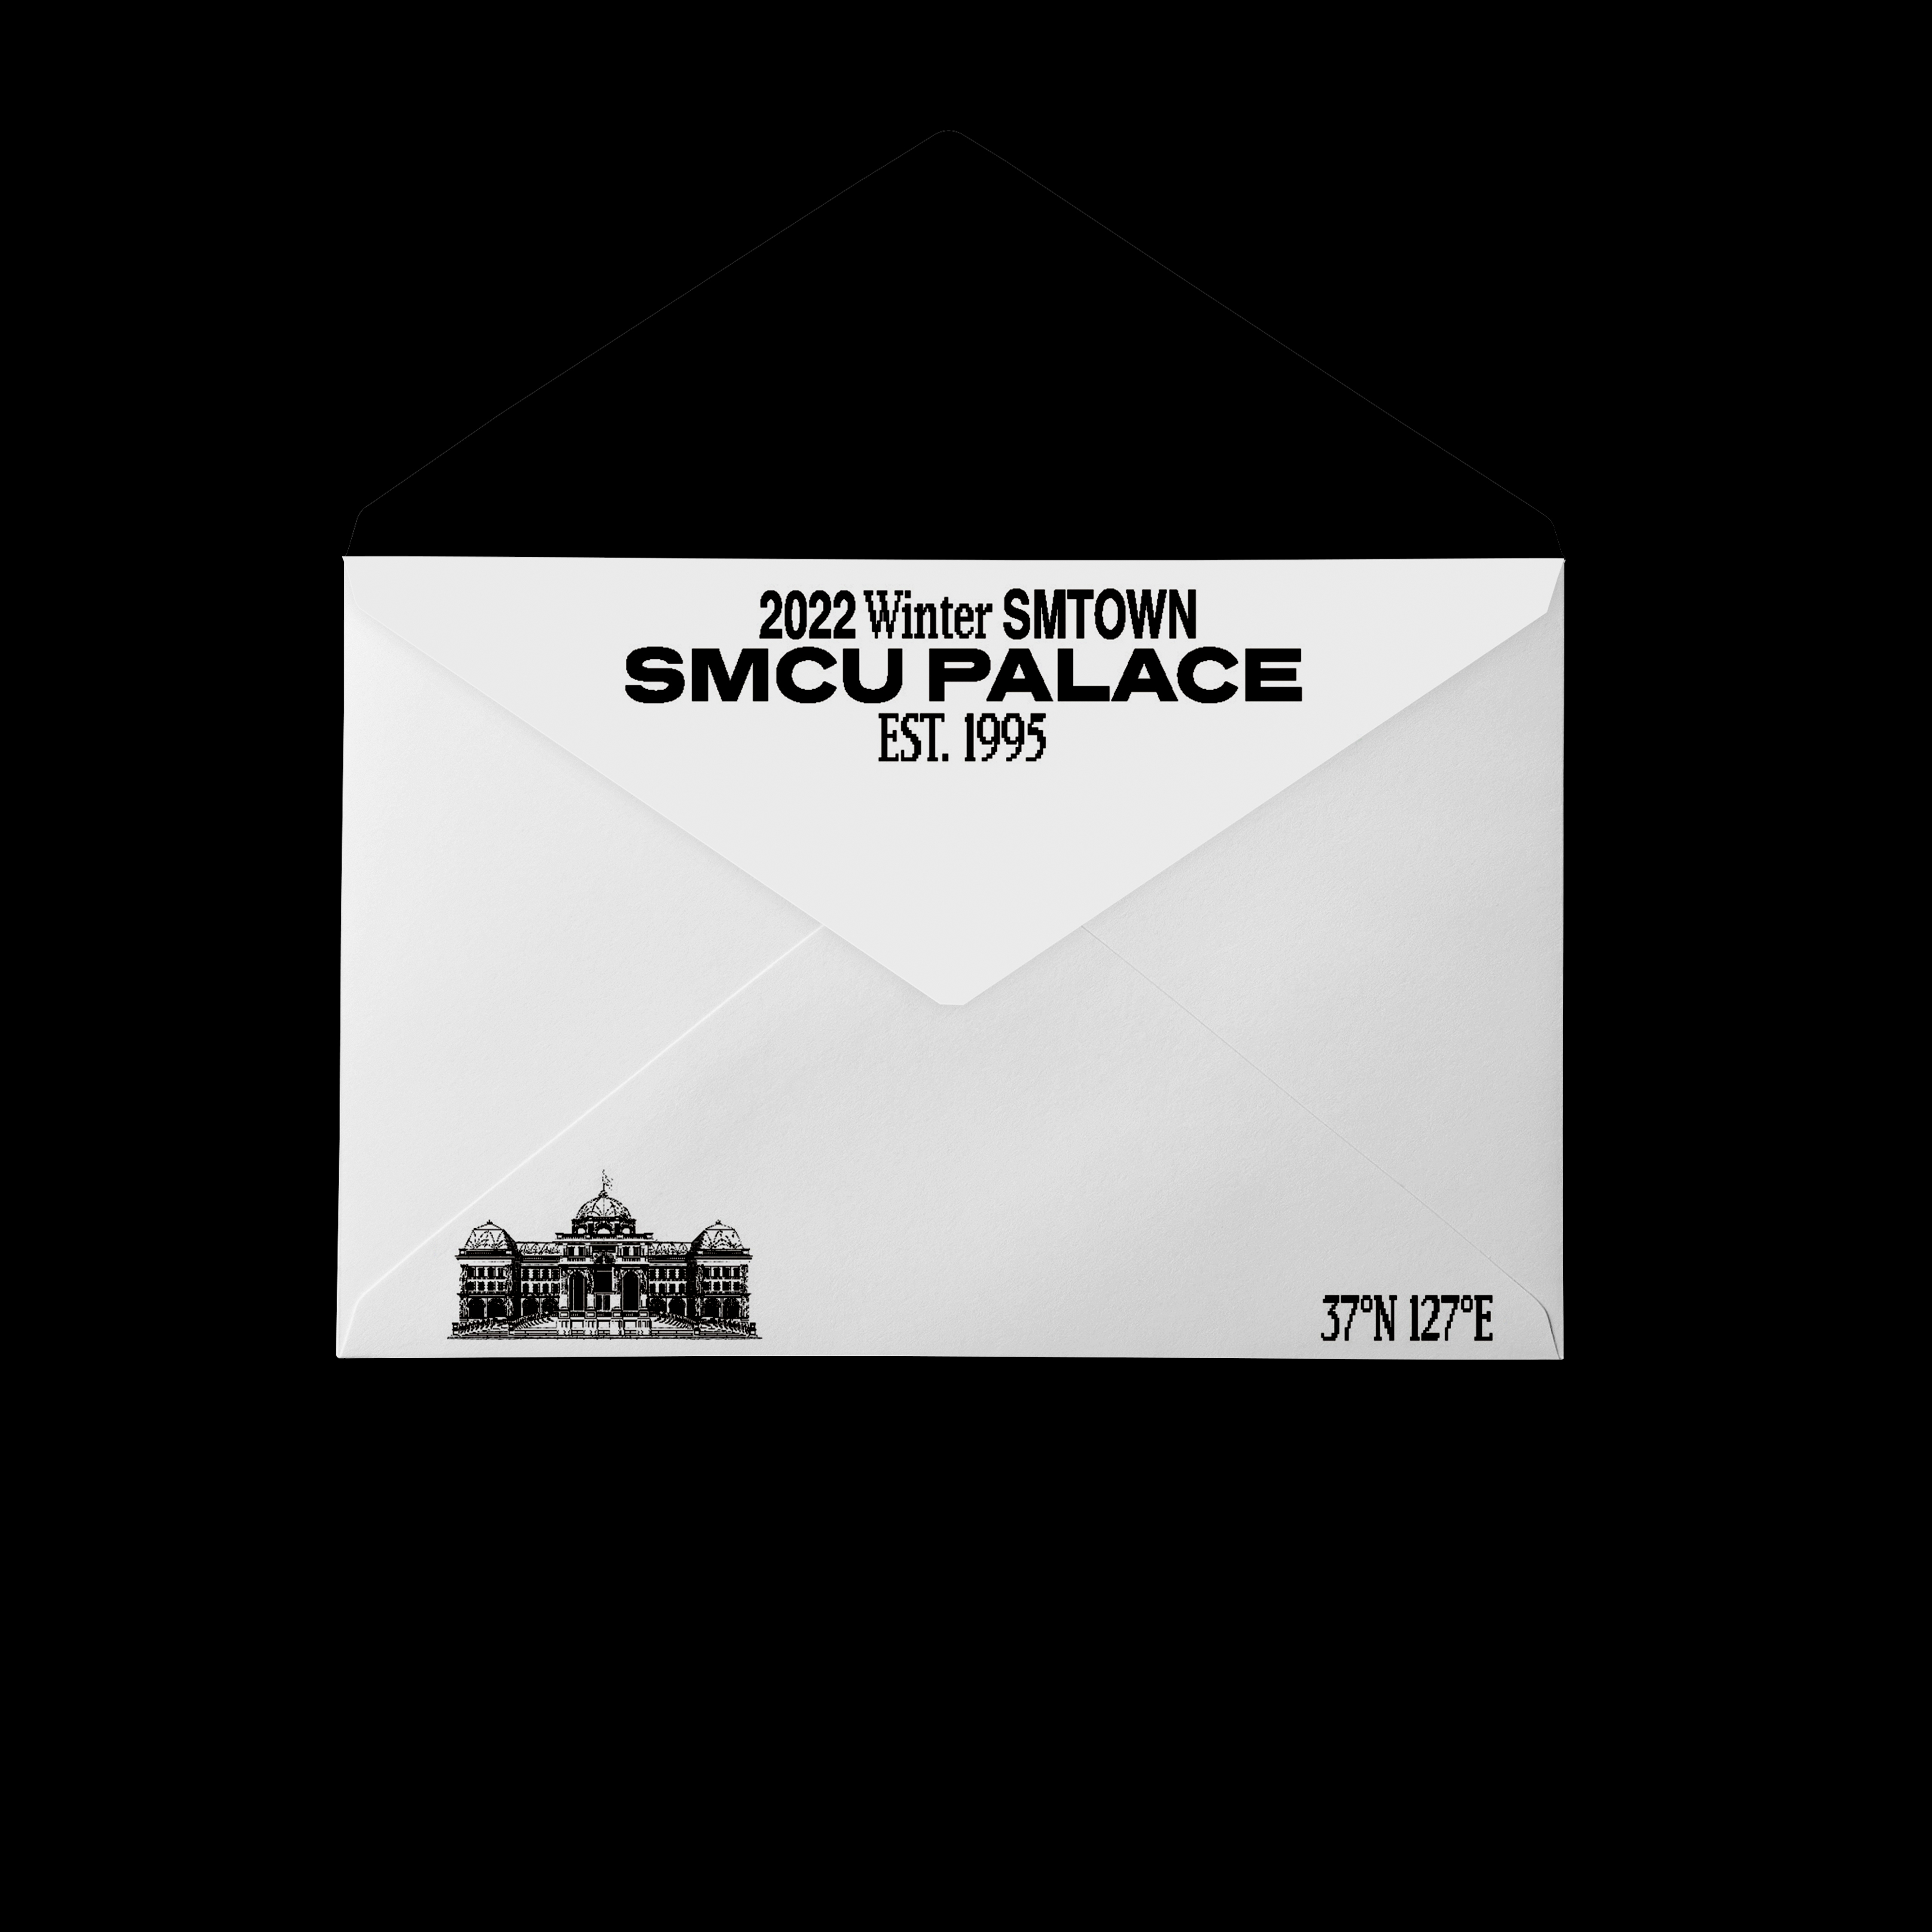 [全款 裸专] WayV - 2022 Winter SMTOWN : SMCU PALACE (GUEST. WayV) (Membership Card Ver.)_肖俊吧XIAOJUNBAR